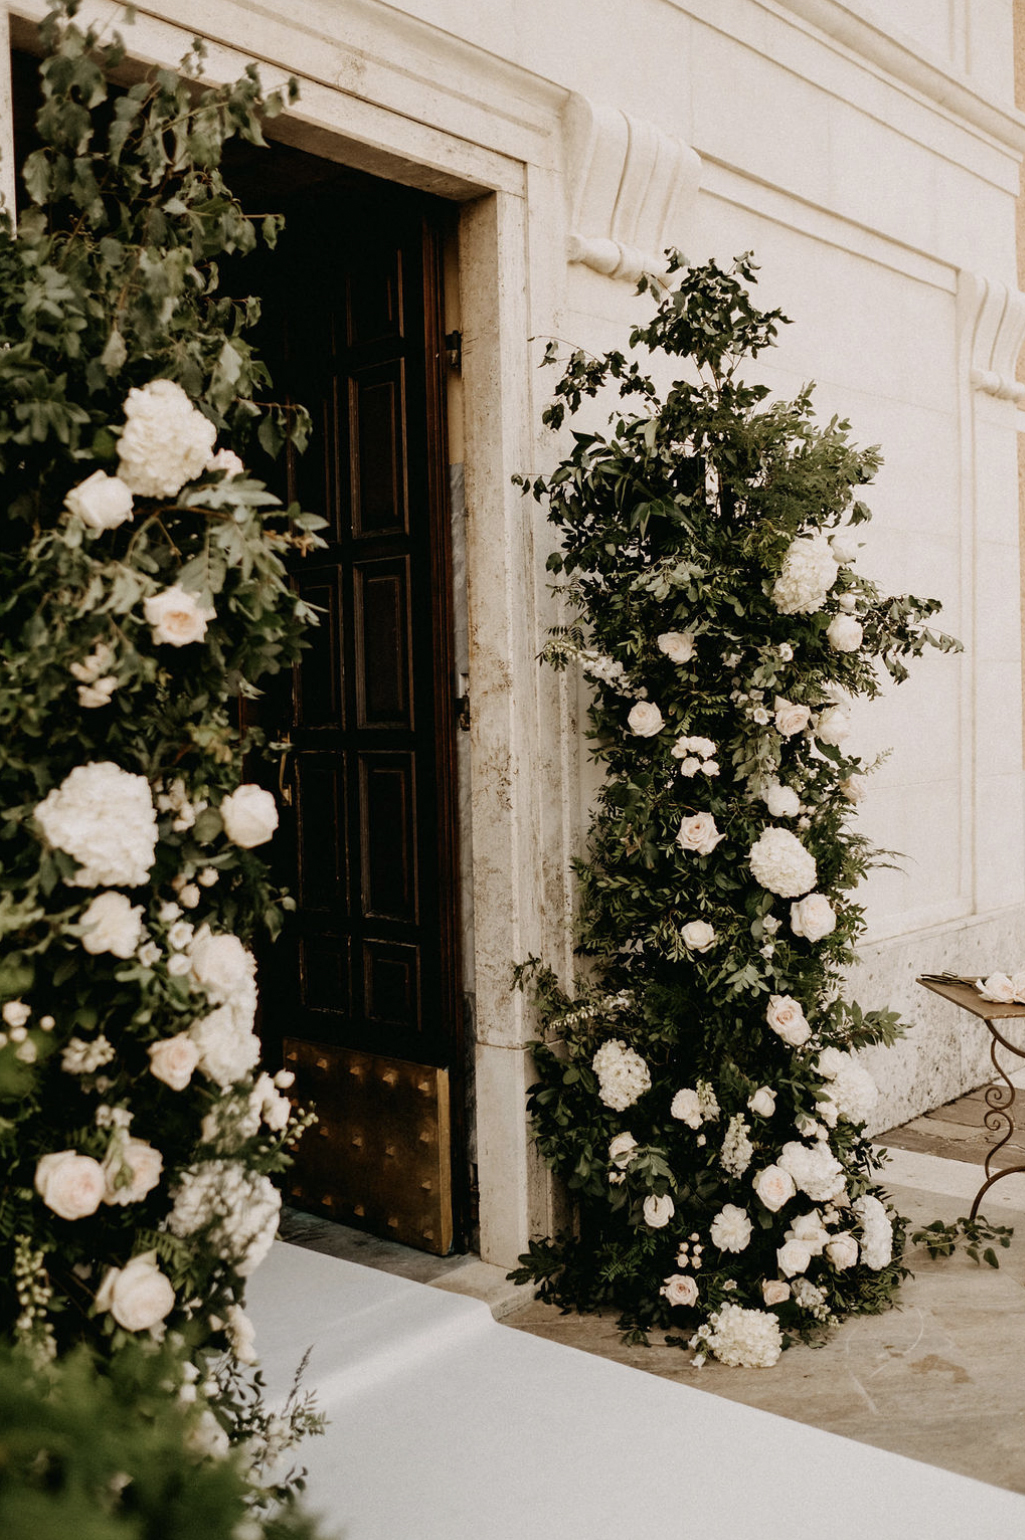 Addobbo ingresso chiesa in stile botanico con verdi di stagione e fiori bianchi